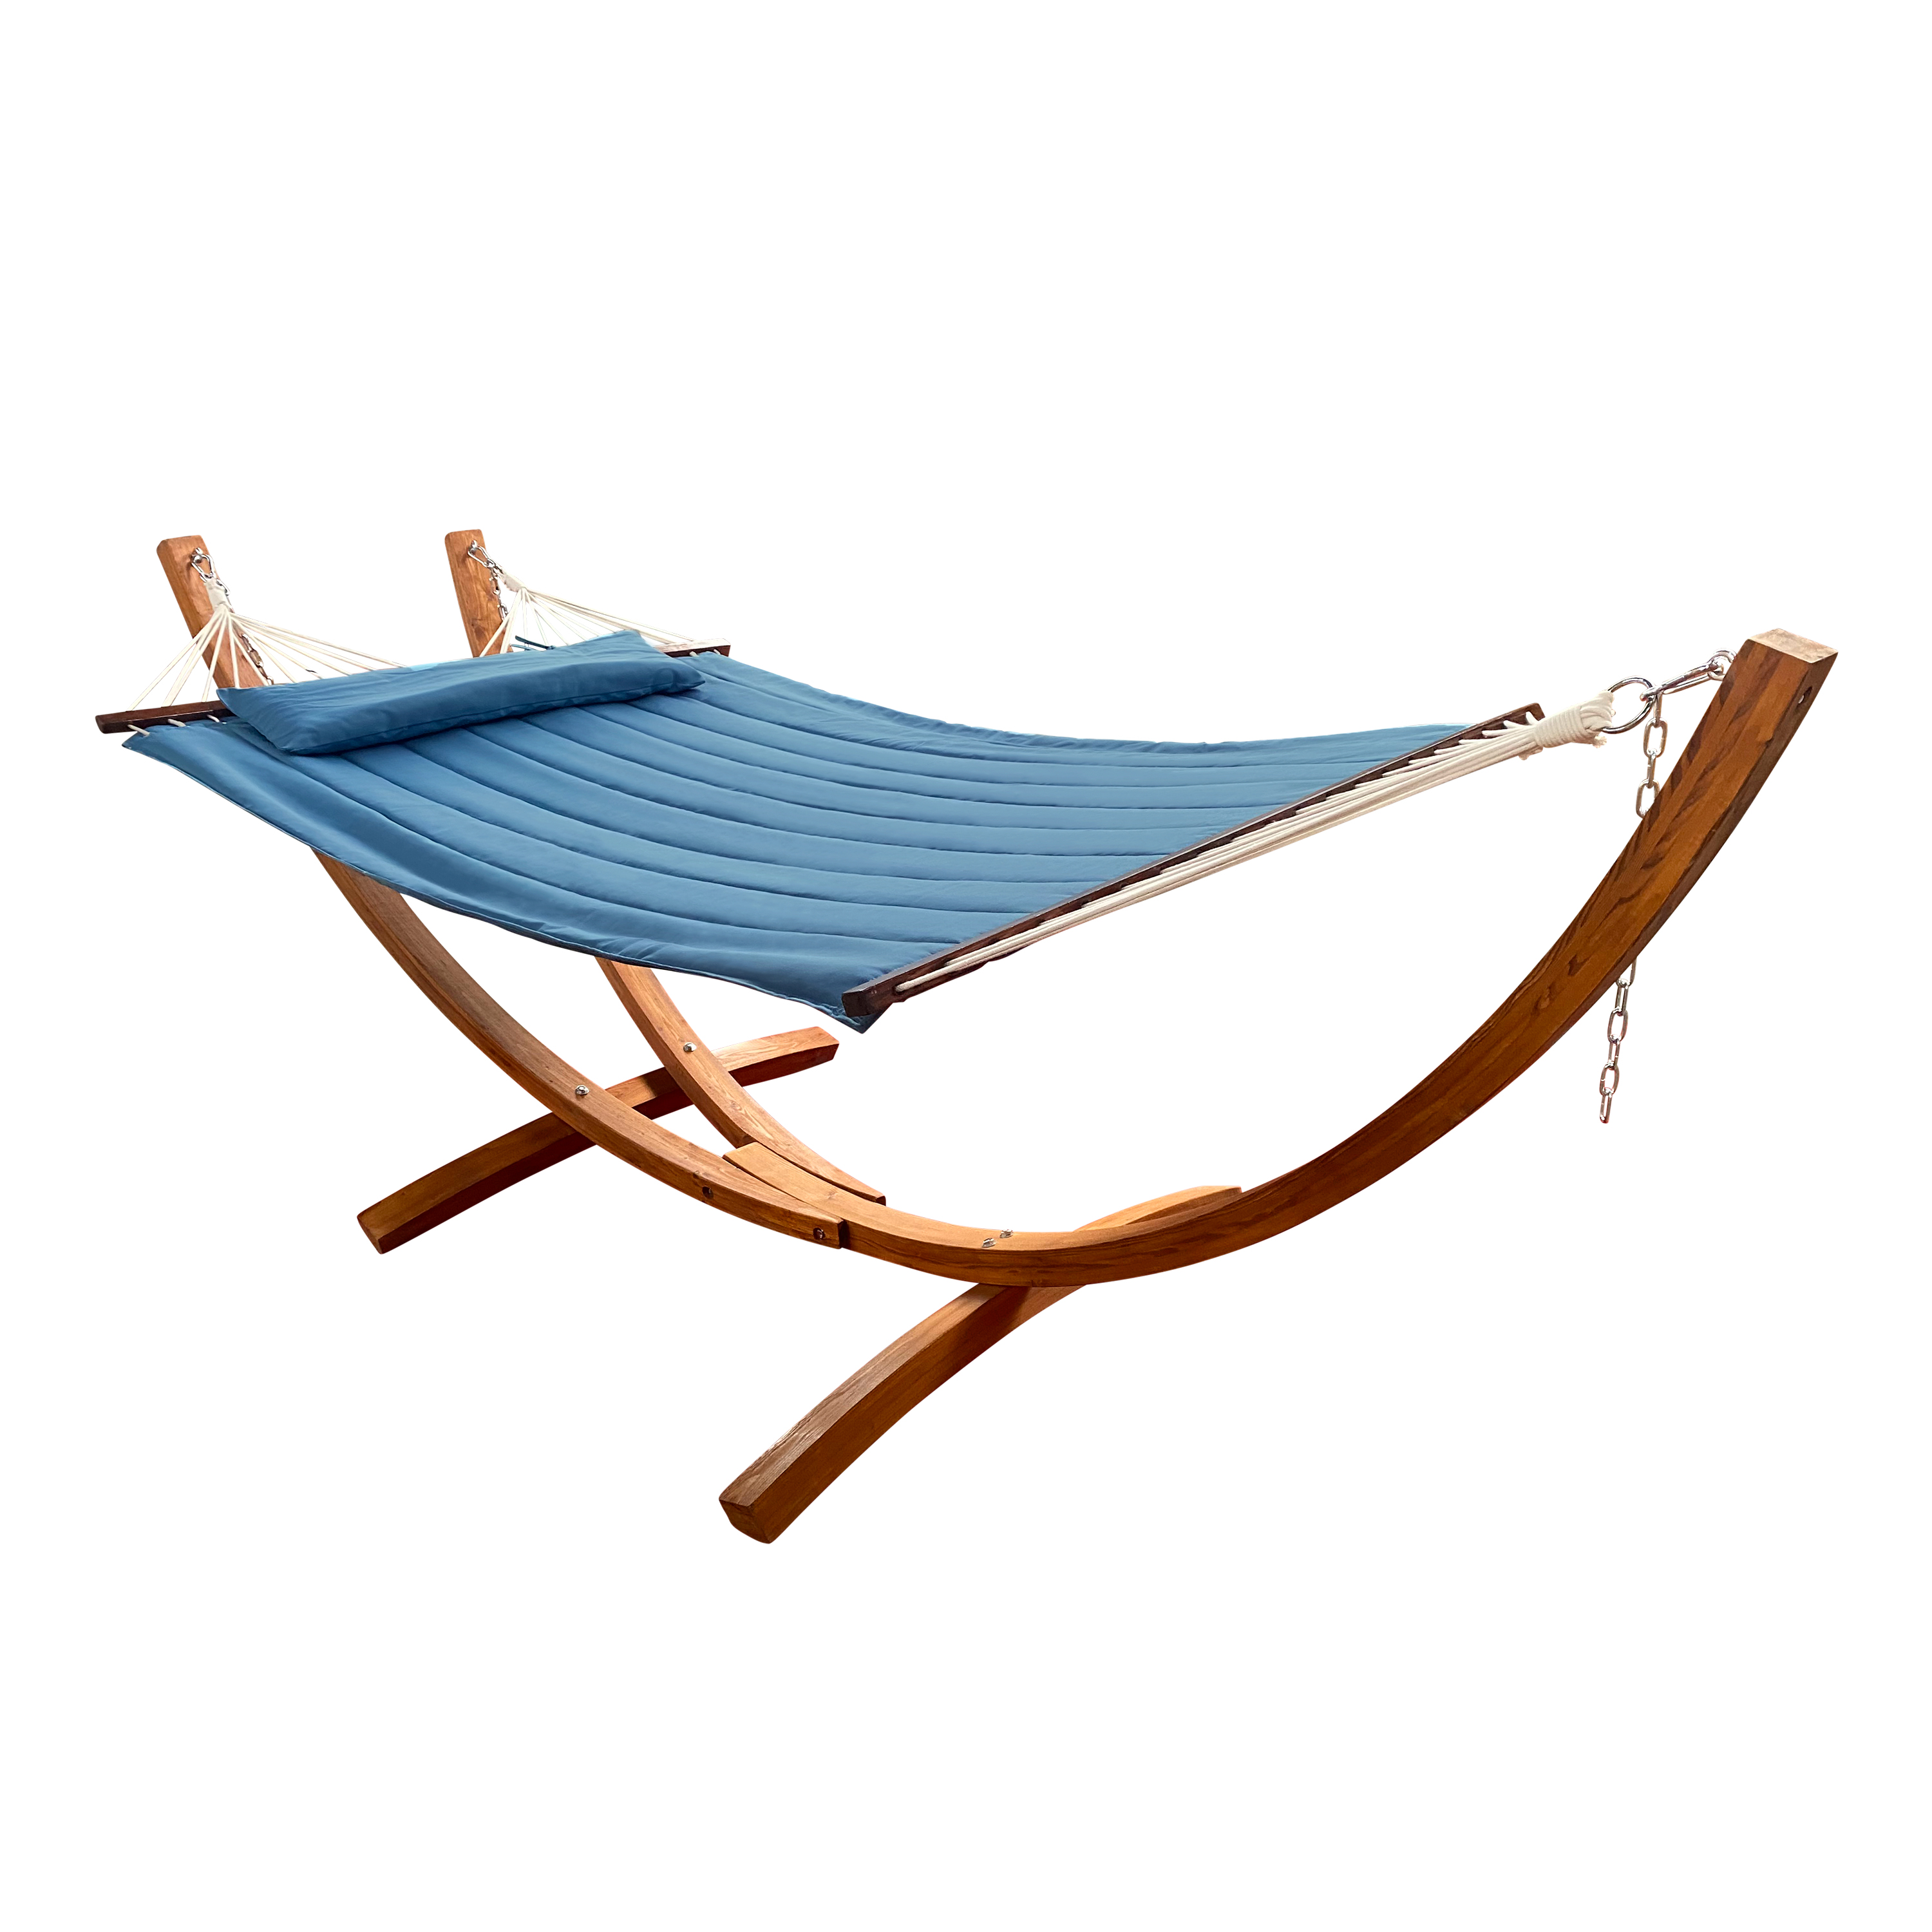 Hawaii Hammock Set - Blue hammock with wooden frame